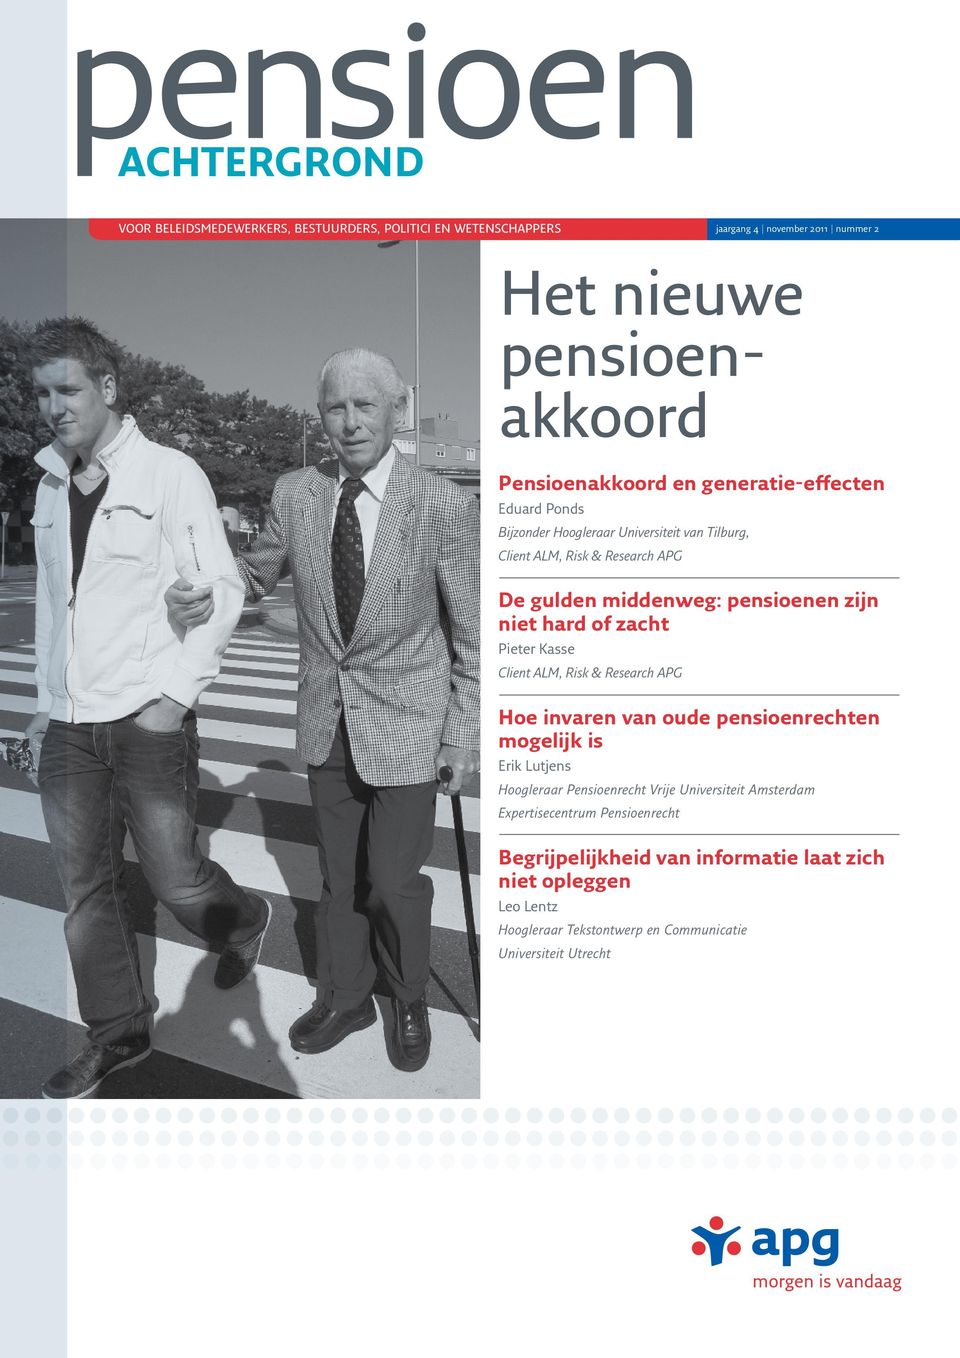 zacht Pieter Kasse Client ALM, Risk & Research APG Hoe invaren van oude pensioenrechten mogelijk is Erik Lutjens Hoogleraar Pensioenrecht Vrije Universiteit